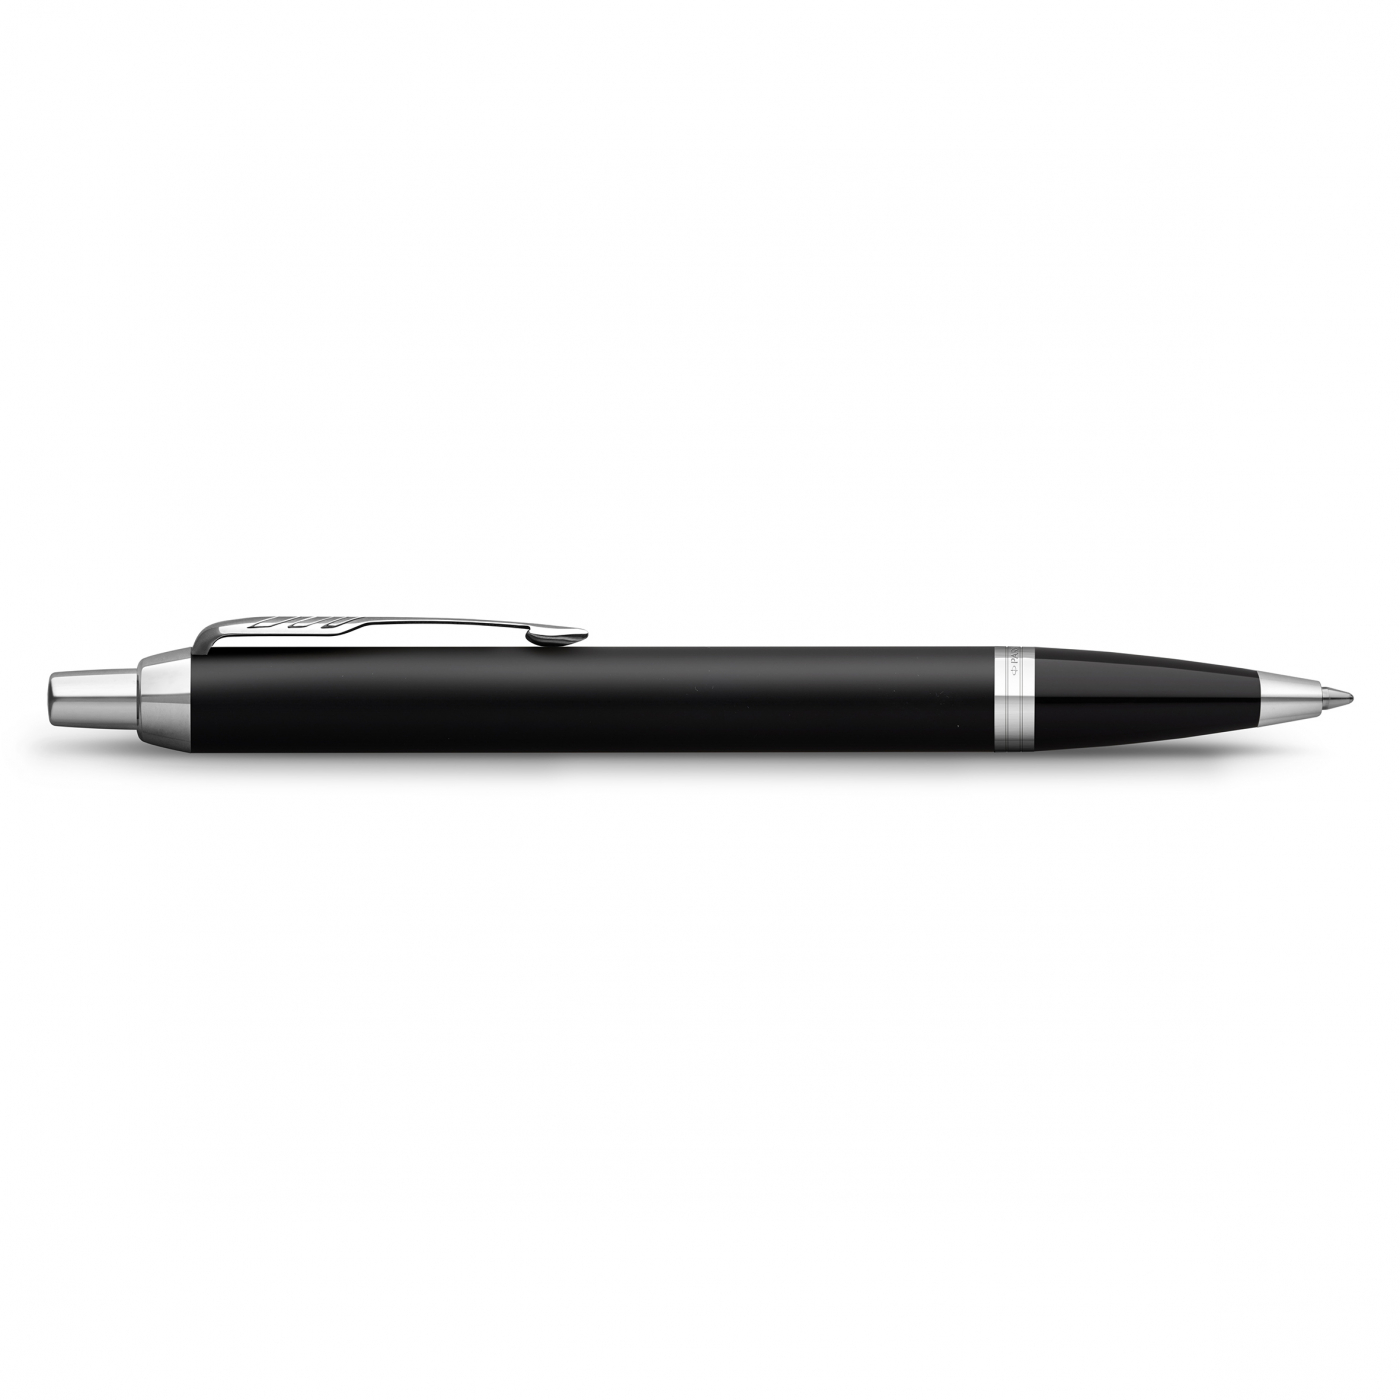 IM Matte Black Ballpoint Pen in the group Pens / Fine Writing / Ballpoint Pens at Pen Store (125379)